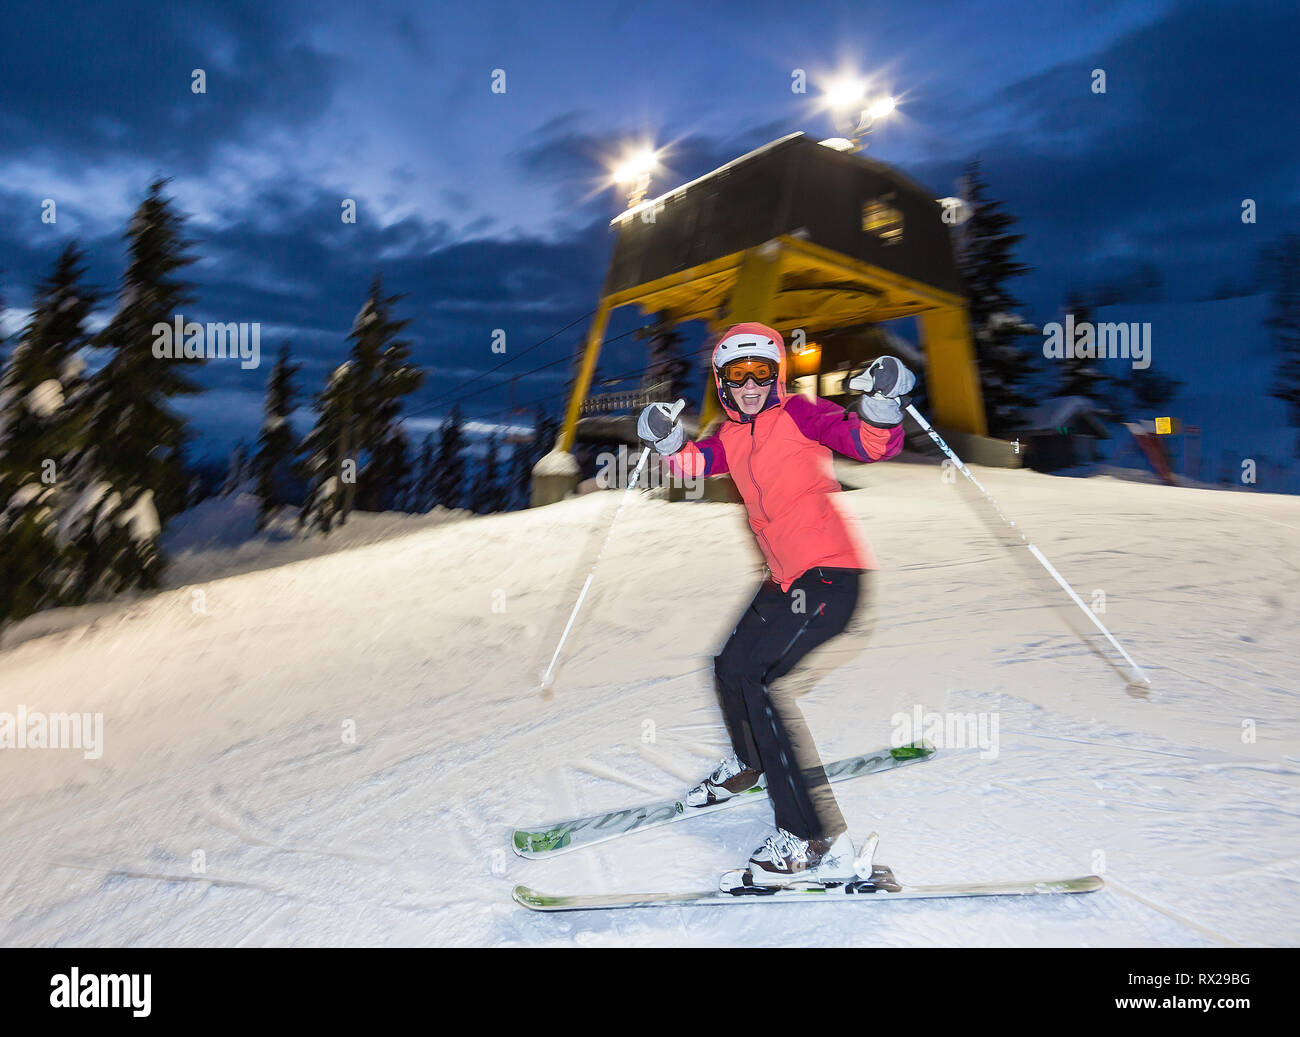 Los esquiadores y snowboarders disfrutan de la experiencia y las horas extendidas que ofrece el esquí nocturno en la estación de esquí de Mt. washington. Mt. Washington, el Valle de Comox, Isla de Vancouver, Columbia Británica, Canadá. Foto de stock